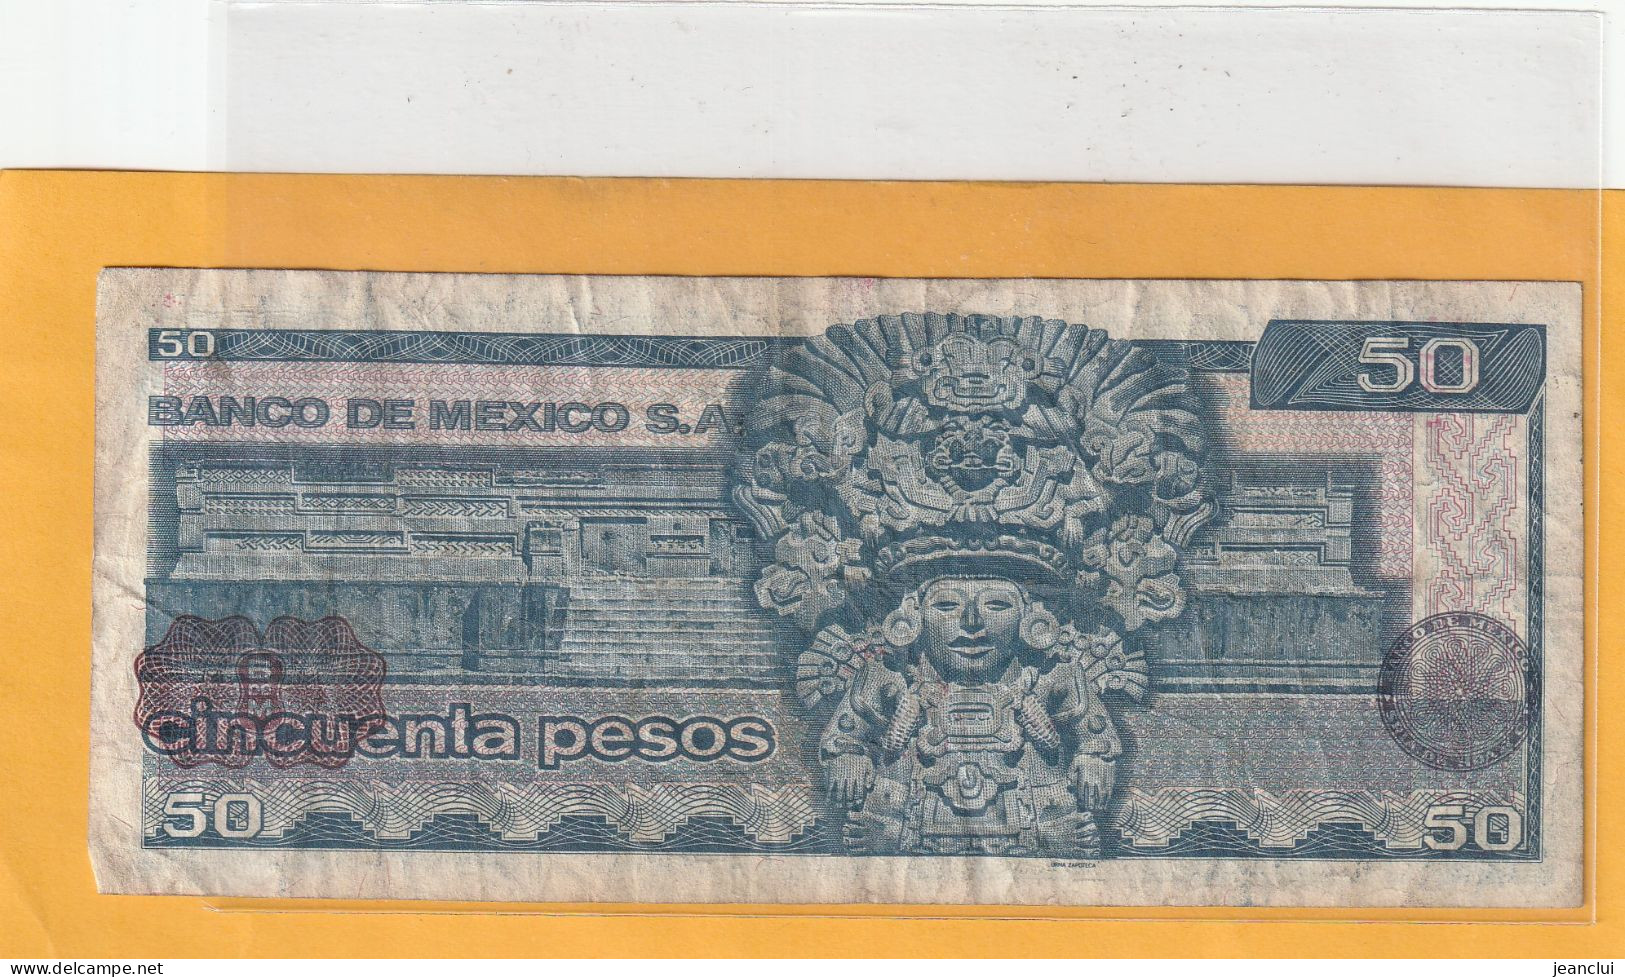 EL BANCO DE MEXICO S.A.  .  50 PESOS  .  27-1-1981  .  N°   H 5879878 .  2 SCANNES  .  BILLET TRES USITE - México